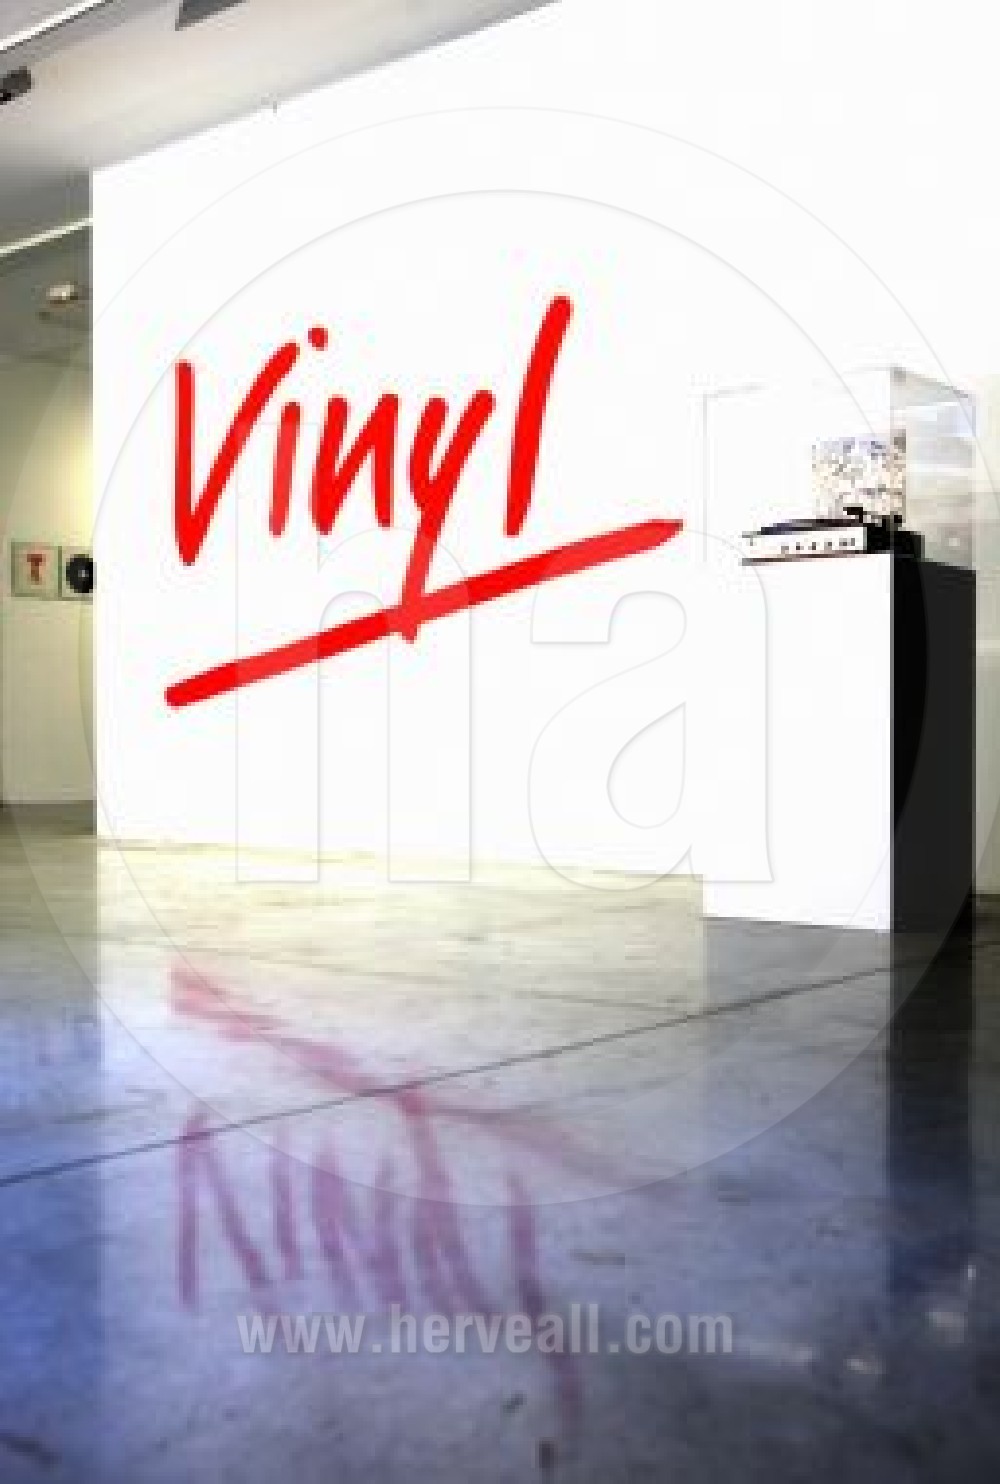 Vinyl (virgin sign)